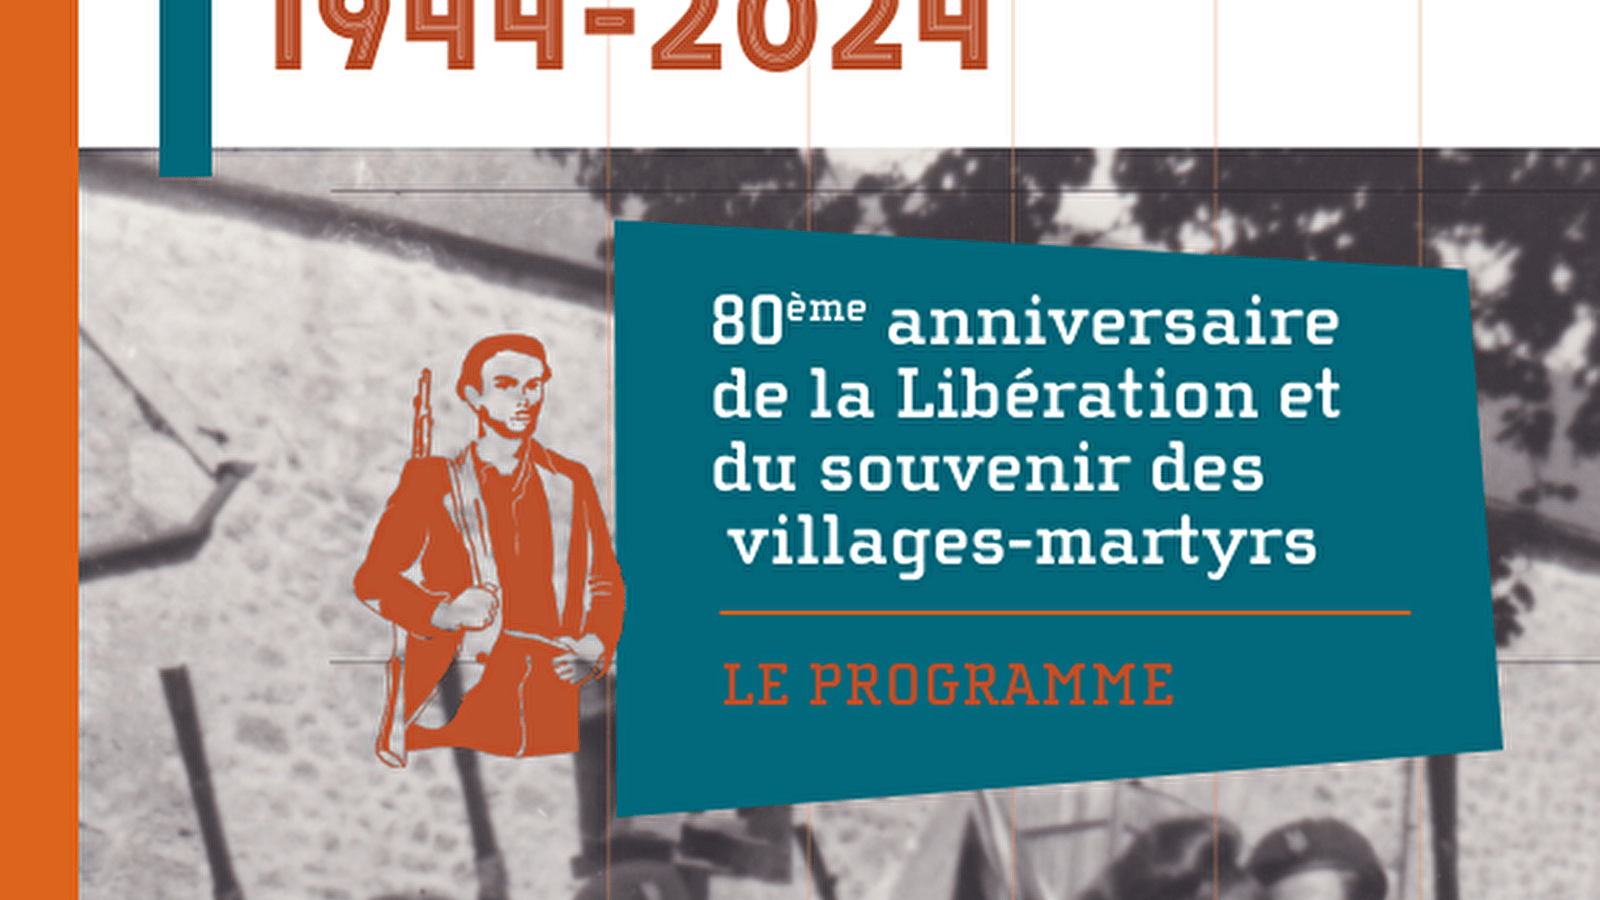 80ème anniversaire de la Libération et du souvenir des villages-martyrs en Morvan